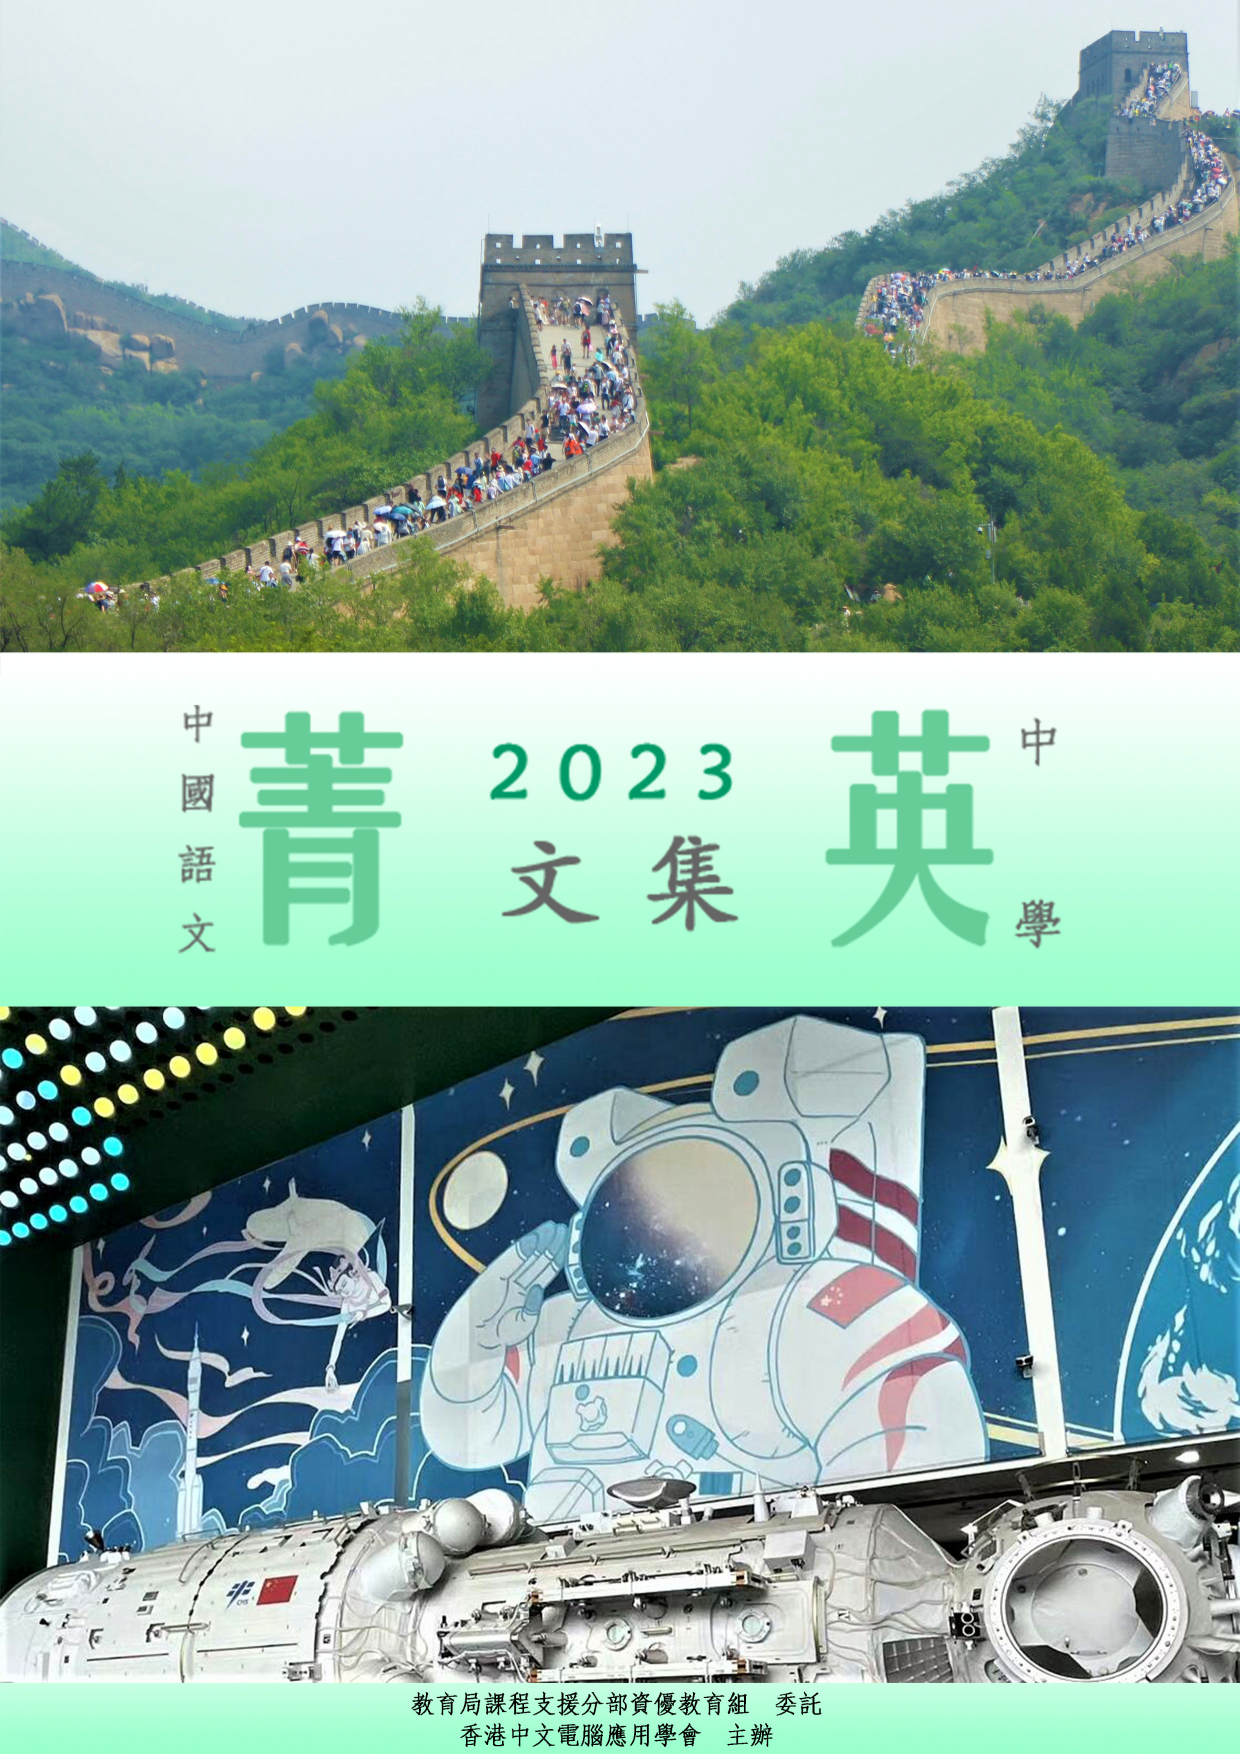 中國語文菁英計劃2022/23菁英文集(中學組)